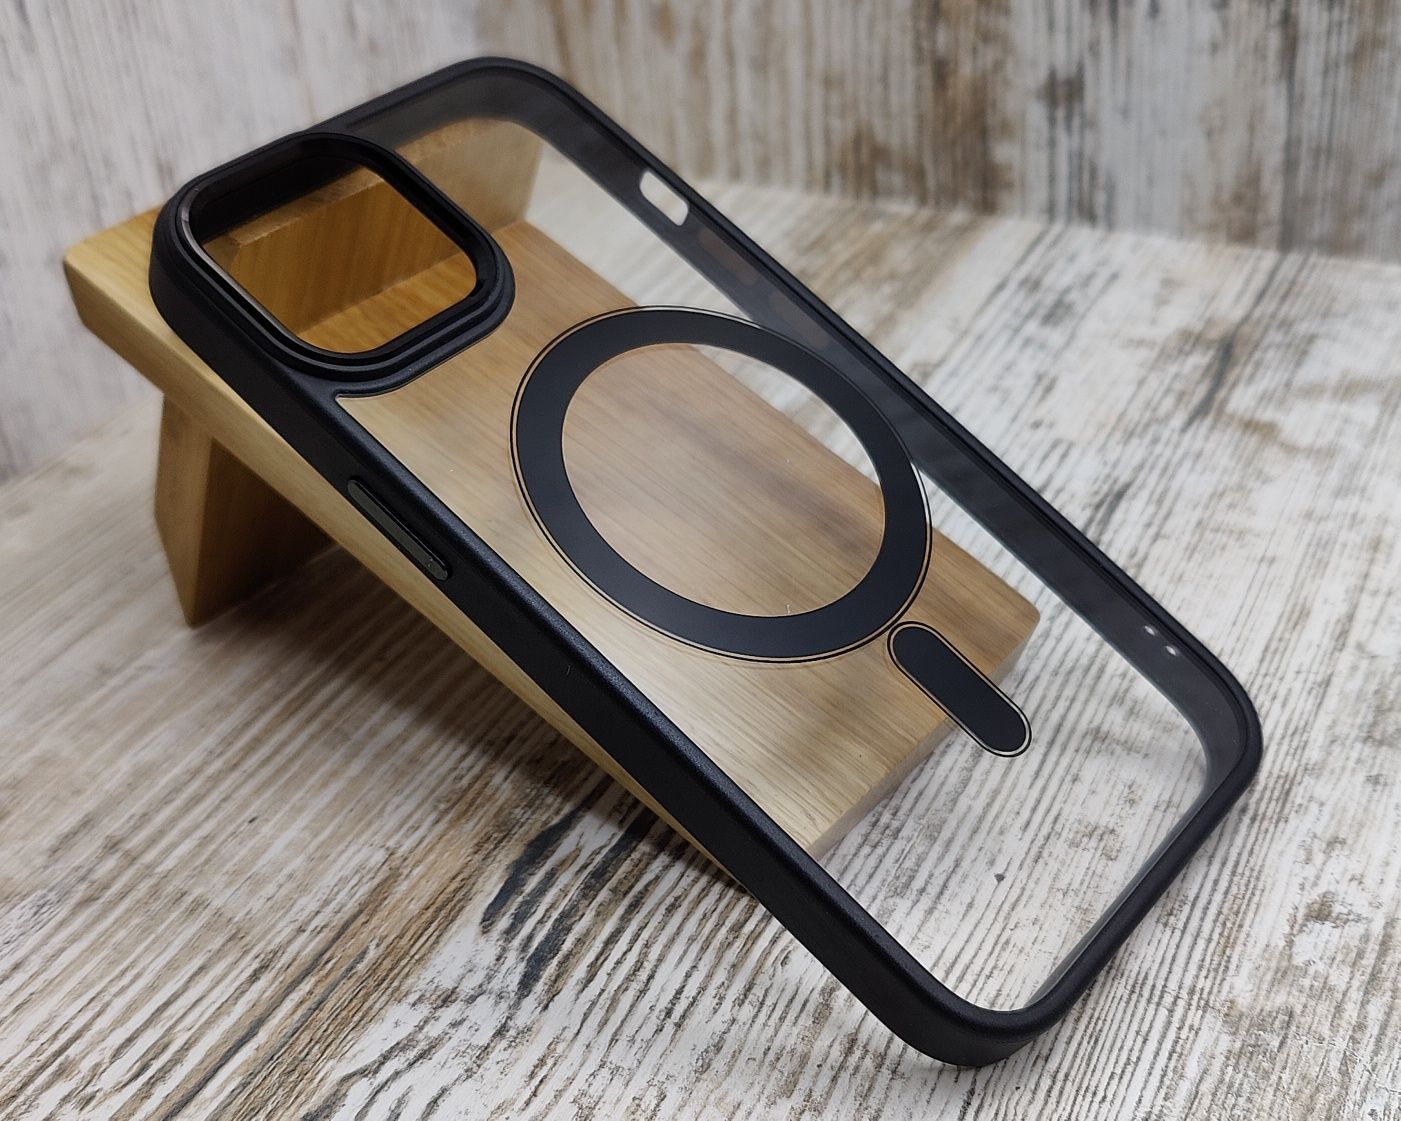 Чехол прозрачный с MagSafe на iPhone 14/ 14 Pro/ 15. Не желтеёт